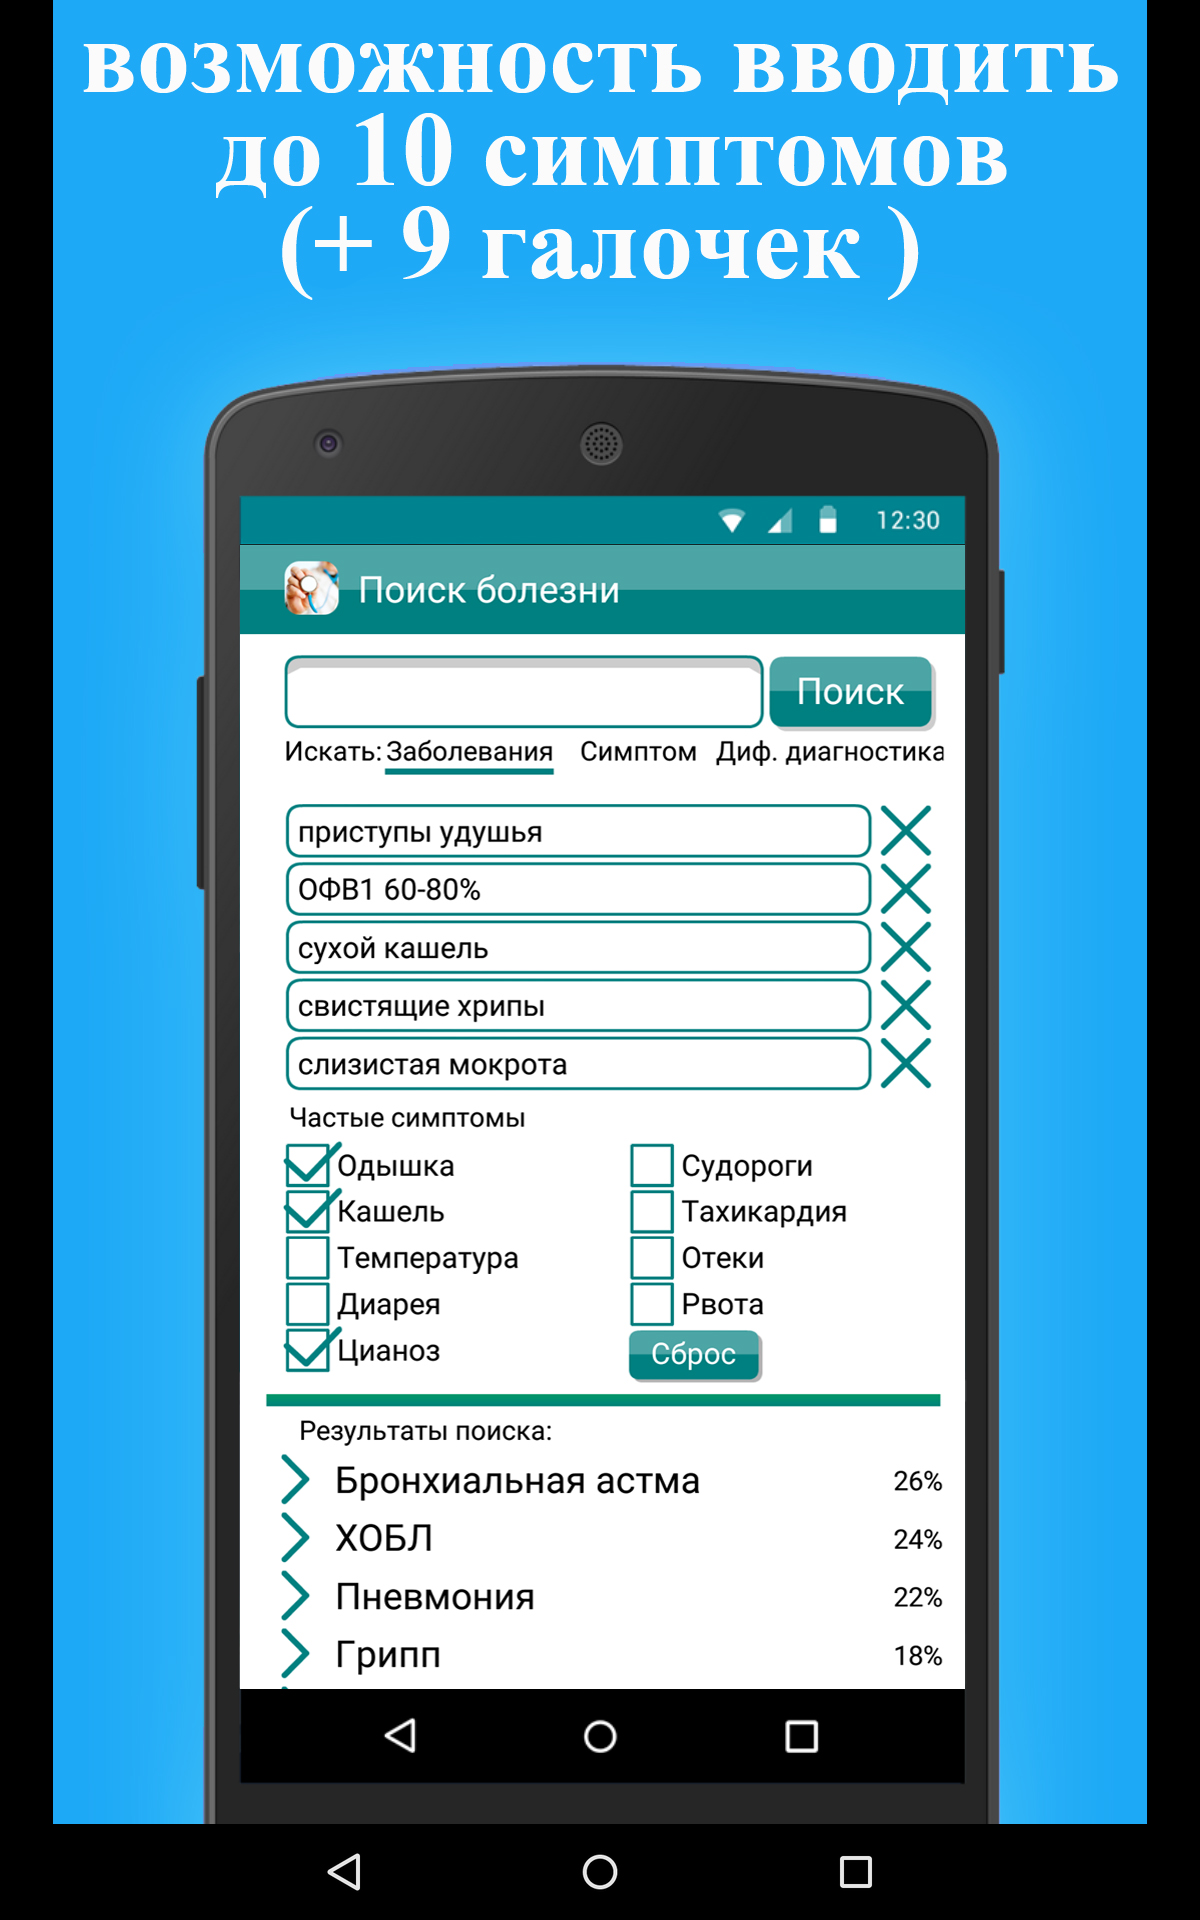 Скачать Поиск болезни по симптомам 1.2.15 для Android - 1200 x 1920 jpeg 525kB